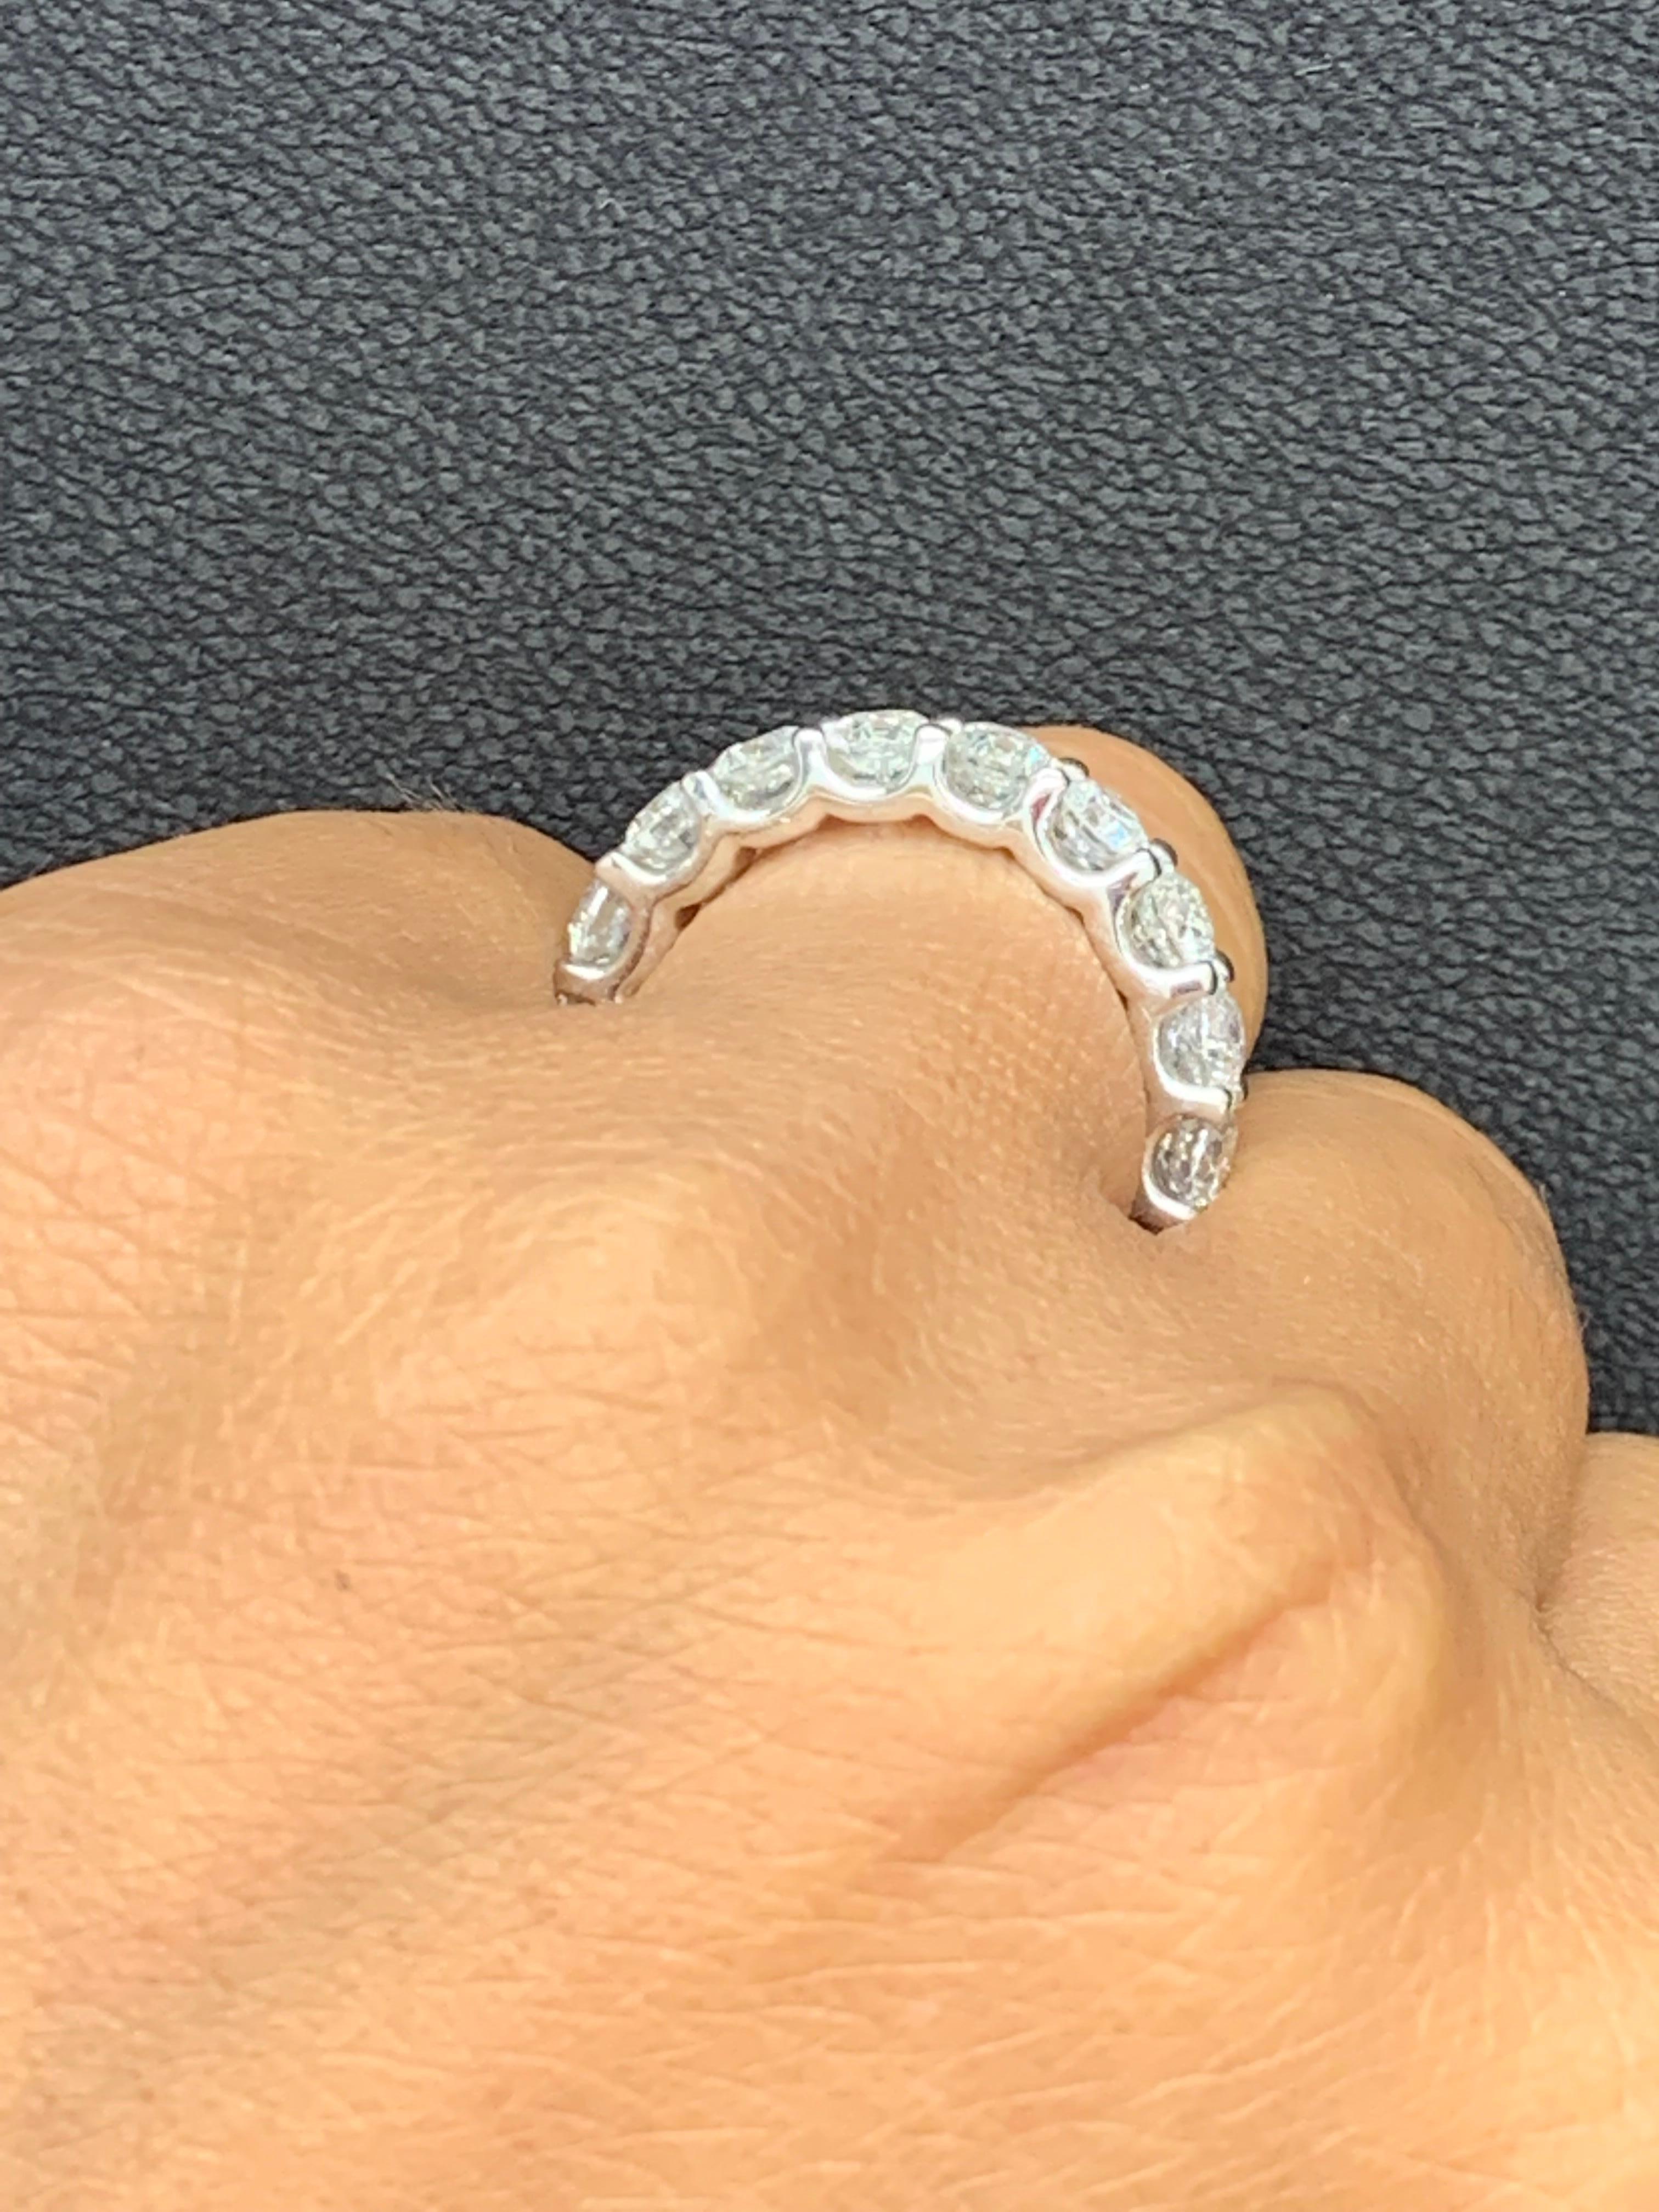 Women's 4.01 Carat Diamond Eternity Wedding Ring in 14k White Gold For Sale